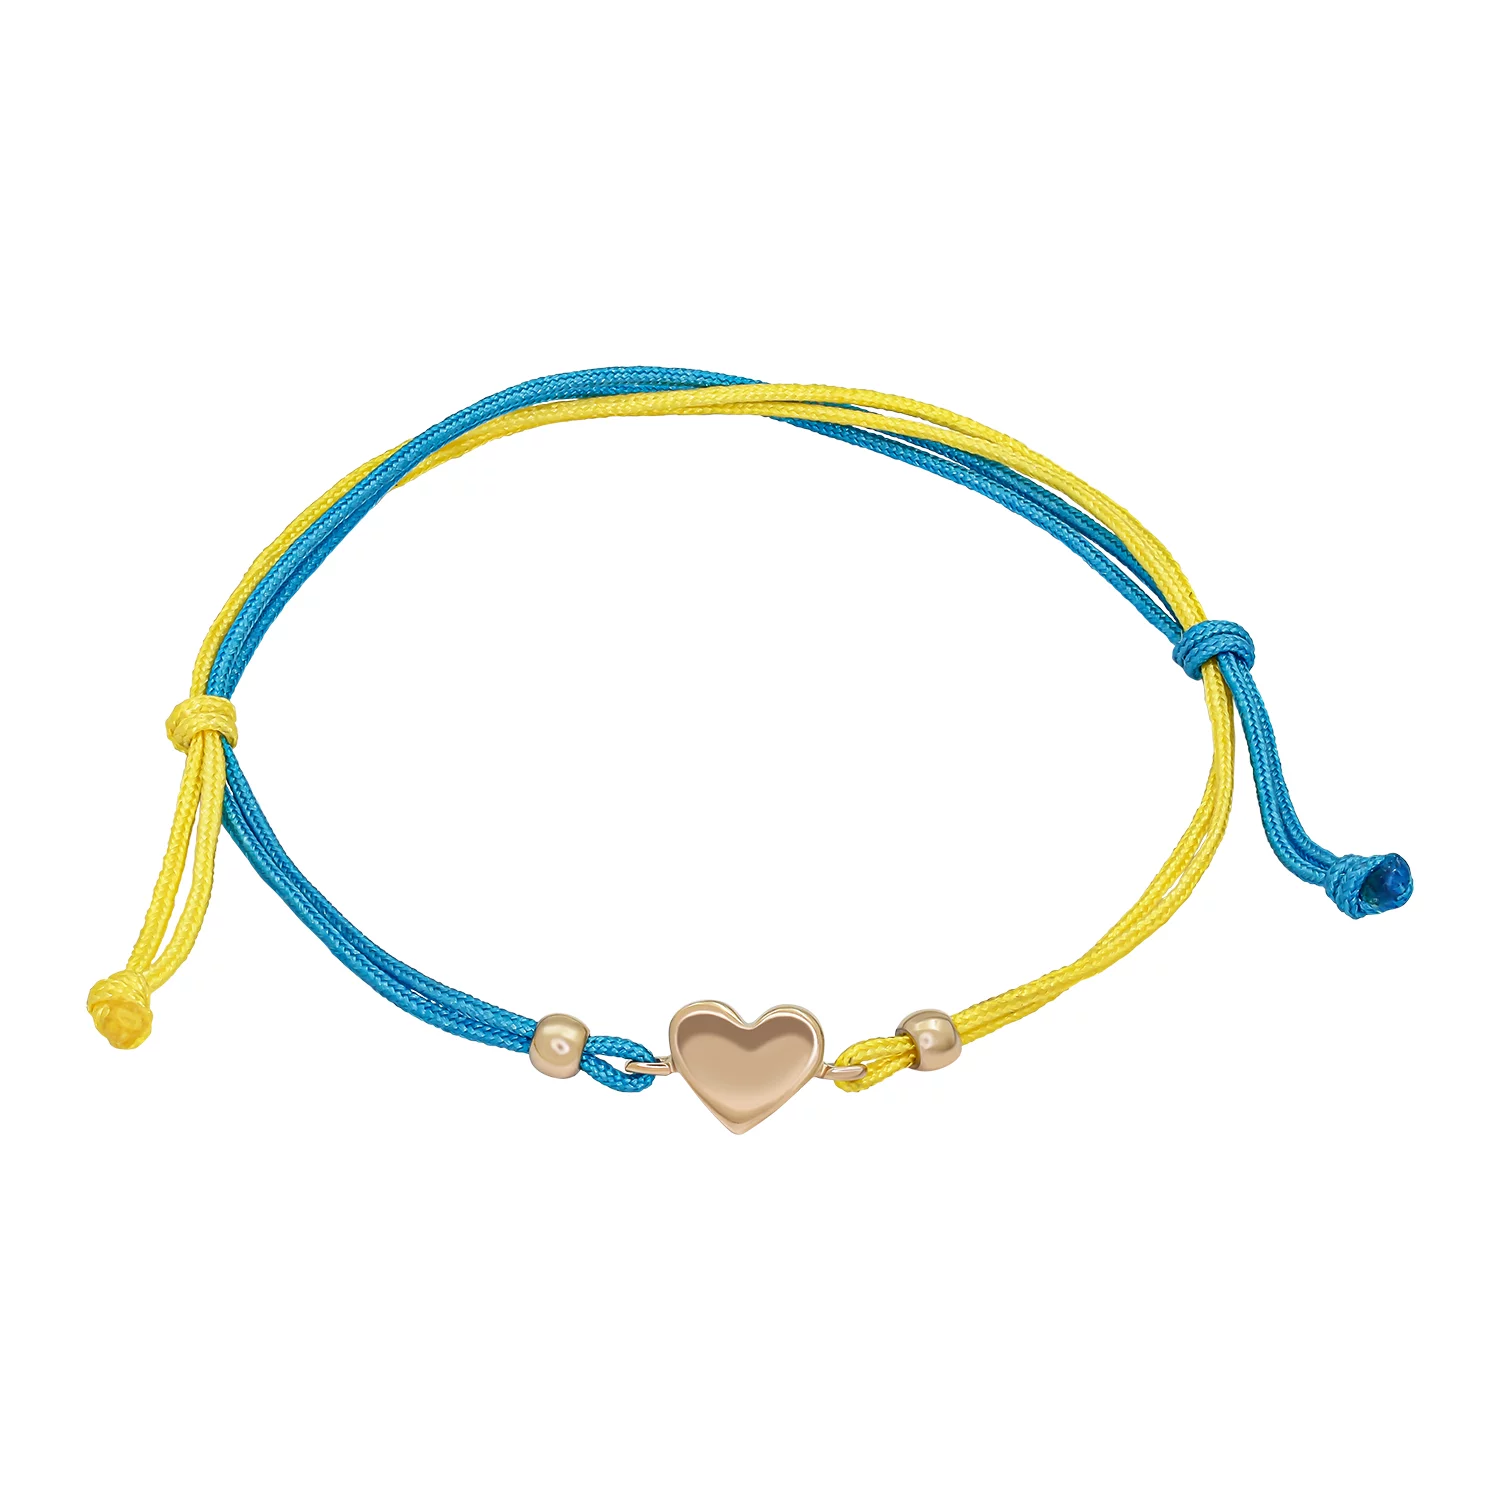 Браслет с золотой вставкой Украина в сердце из желто-синей нитки. Артикул 4109531101: цена, отзывы, фото – купить в интернет-магазине AURUM